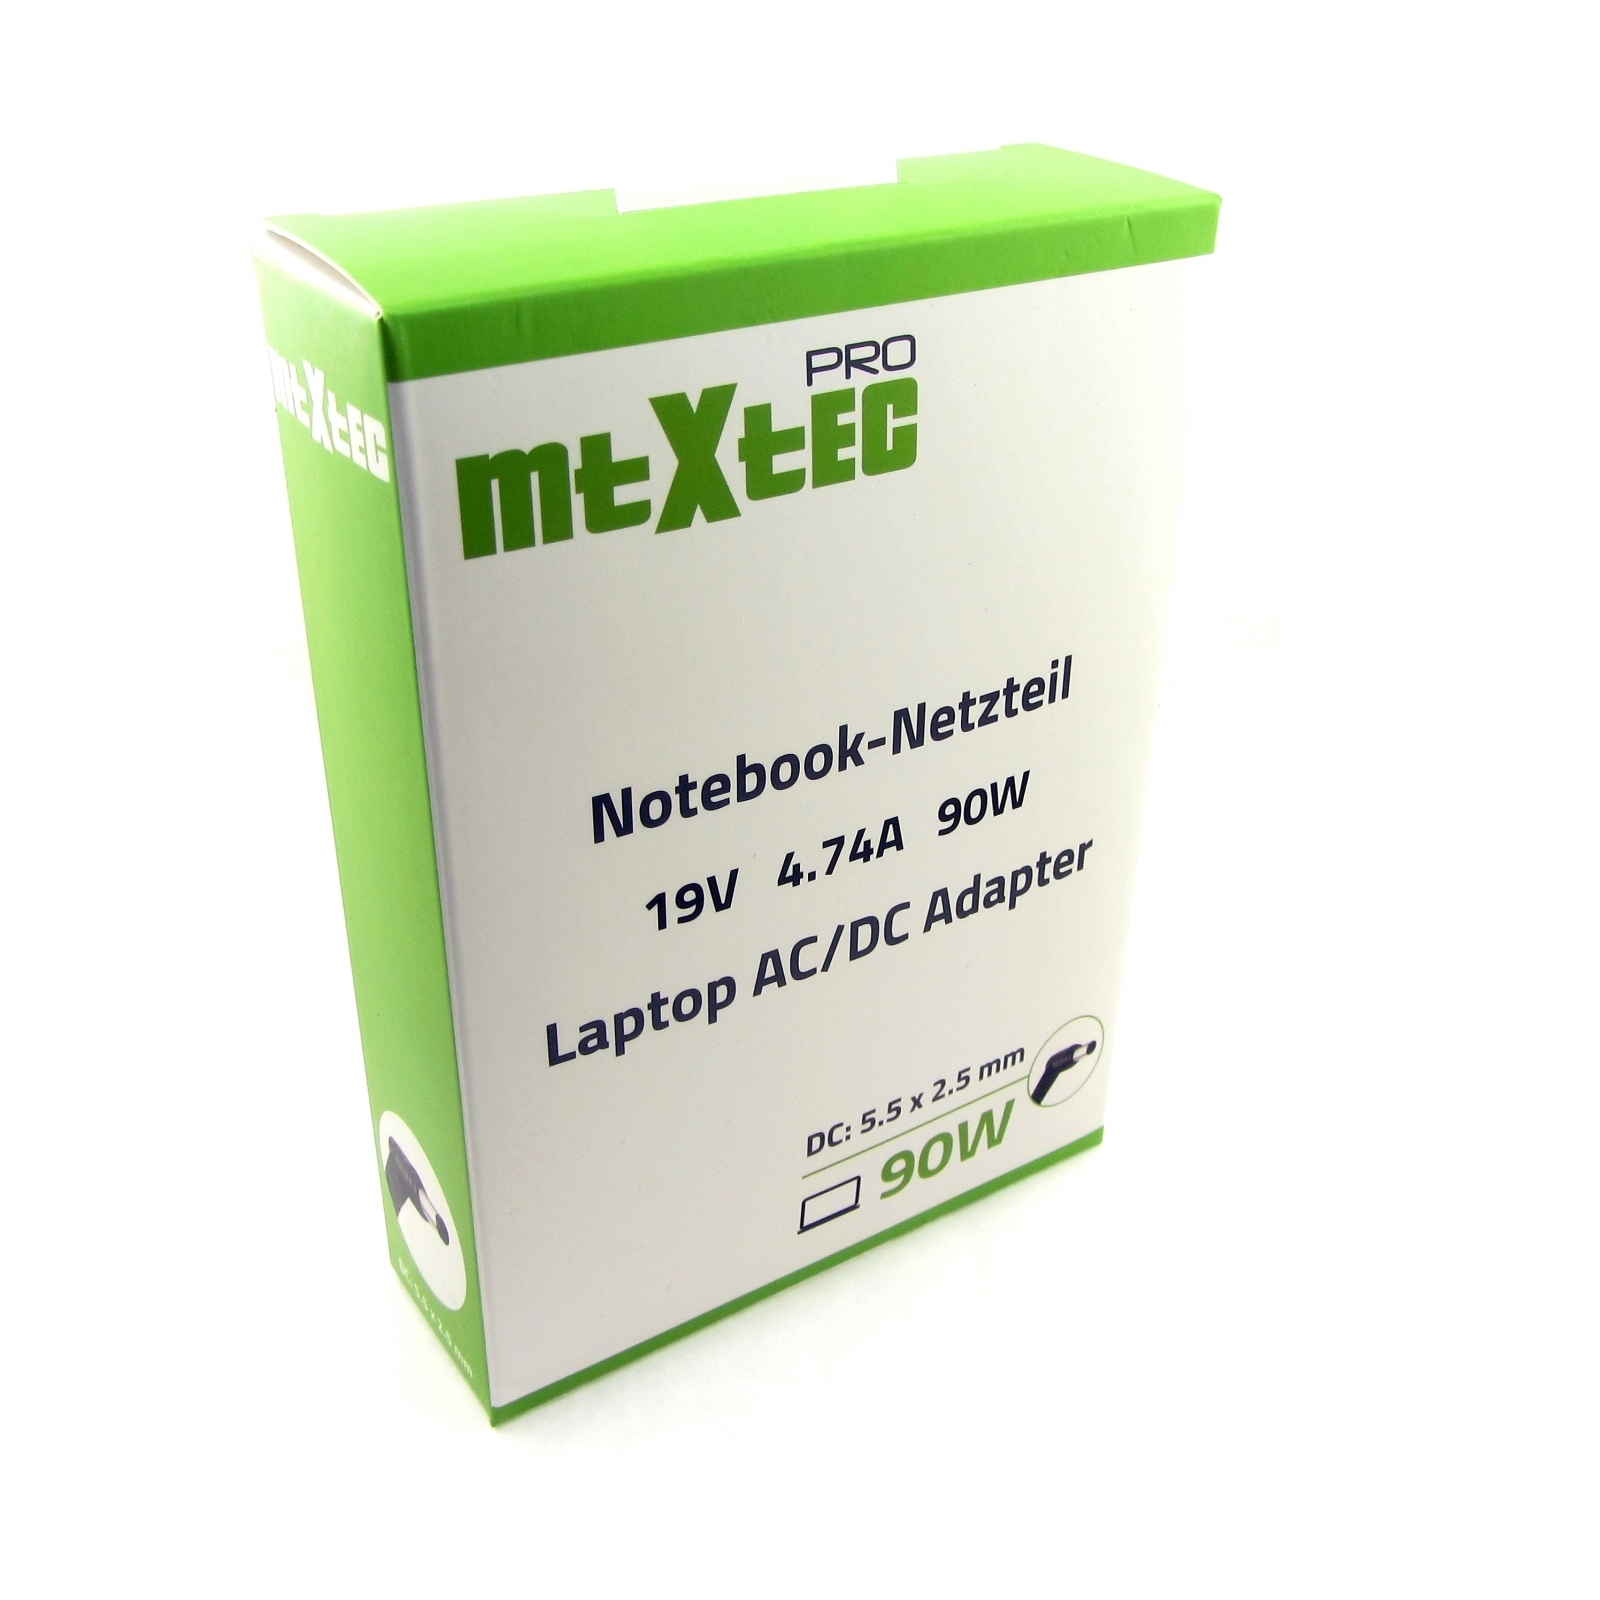 MTXTEC Medion 90 Pro mit 19V, Notebook-Netzteil 5.5x2.5mm Netzteil Toshiba, Stecker Asus, 4.74A, für Watt 90W